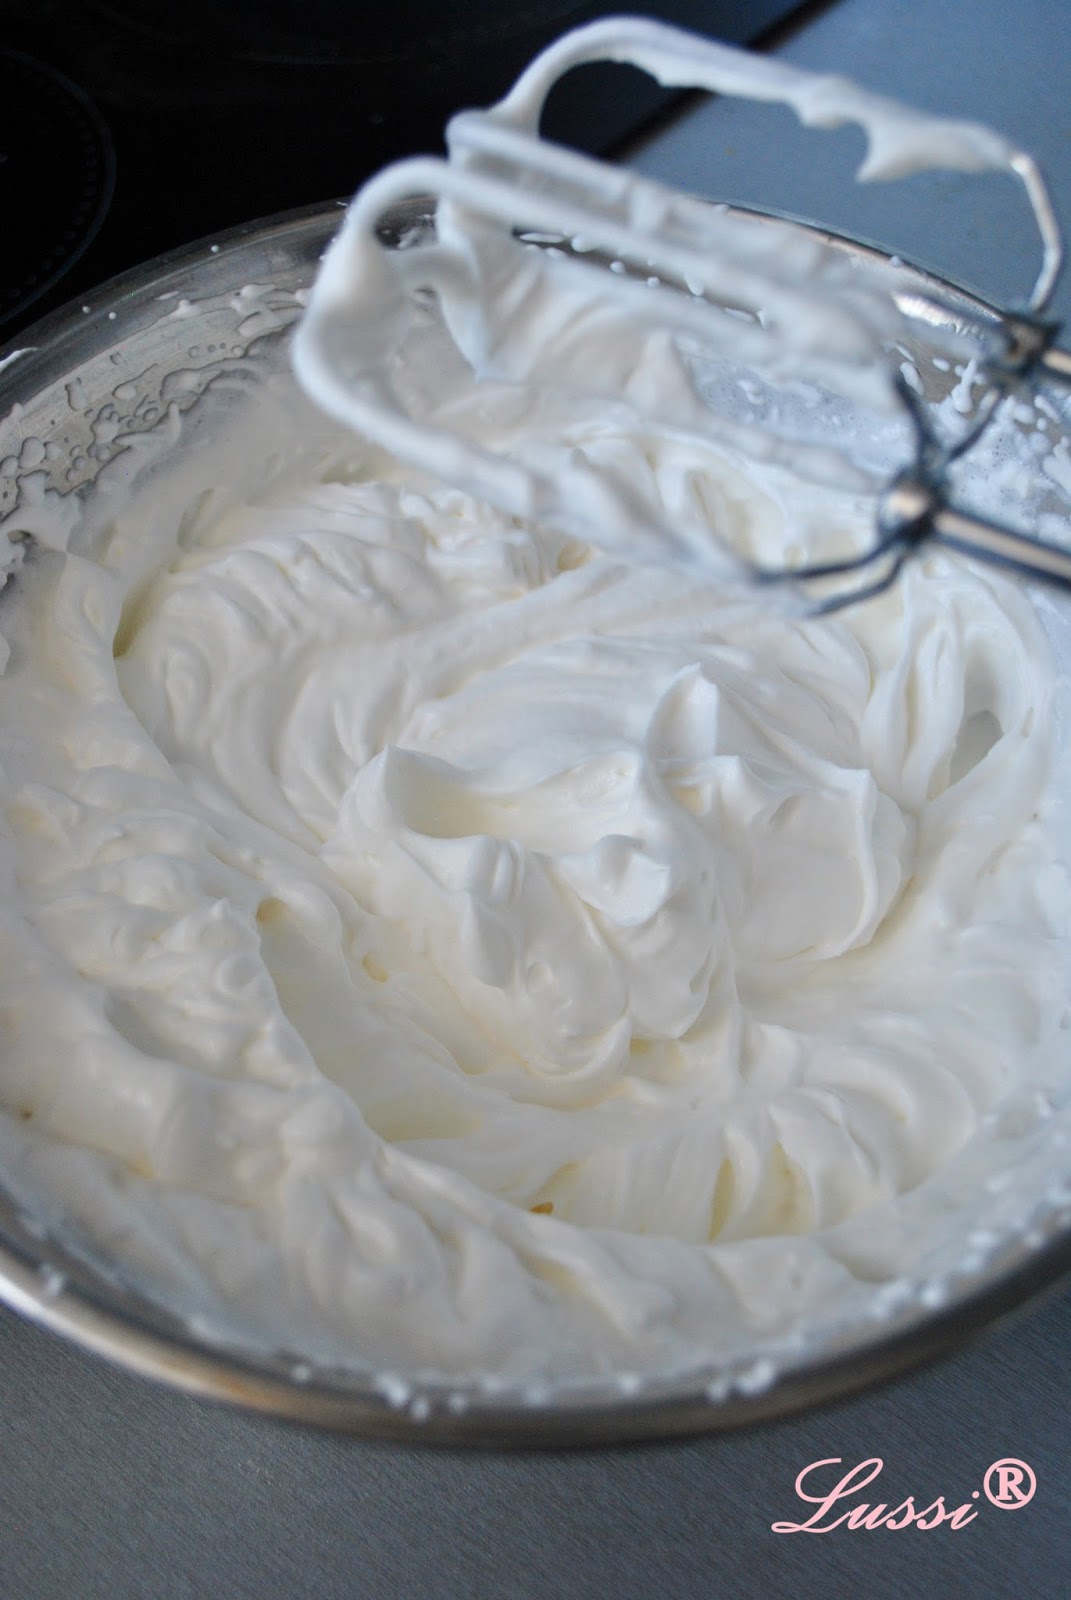 Рецепт крема из сливок и маскарпоне. Маскарпоне это взбитые сливки. Перевзбитый маскарпоне. Крем из маскарпоне для торта. Крем с маскарпоне и сливками для торта.